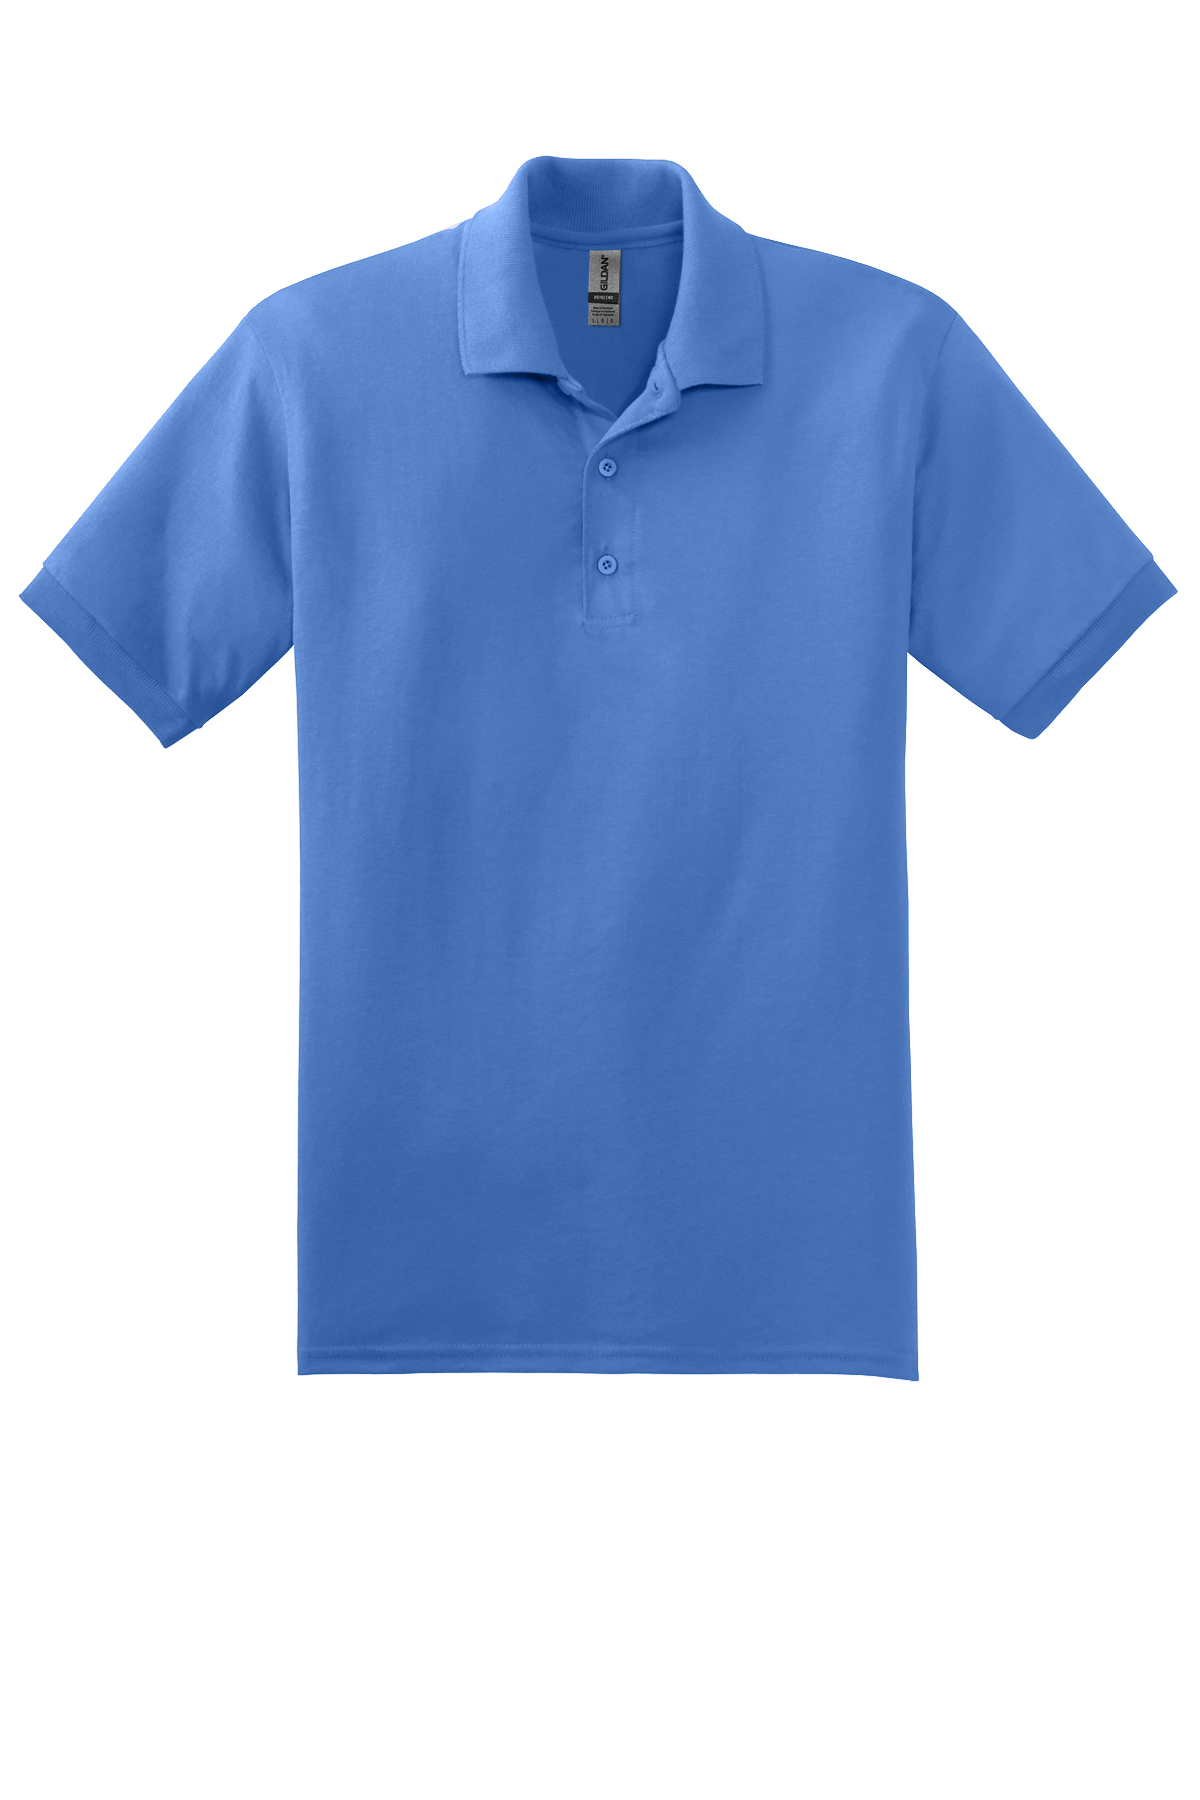 Gildan - DryBlend 6-Ounce Jersey Knit Sport Shirt | Product | SanMar